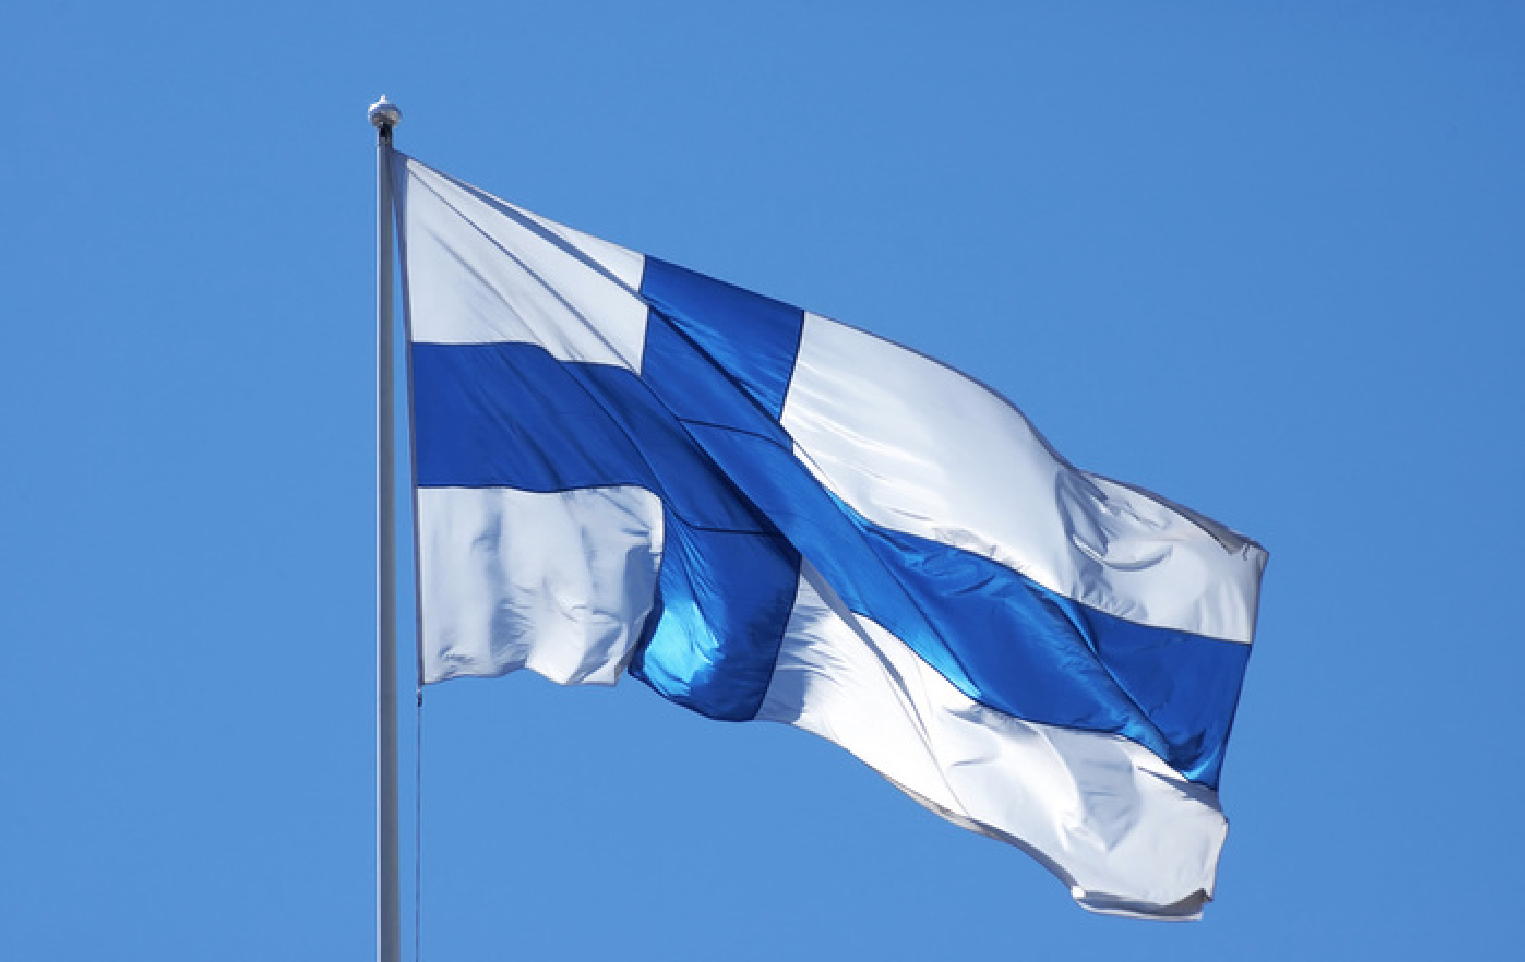 Finlandia, miembro de pleno derecho de la OTAN tras culminar ratificación